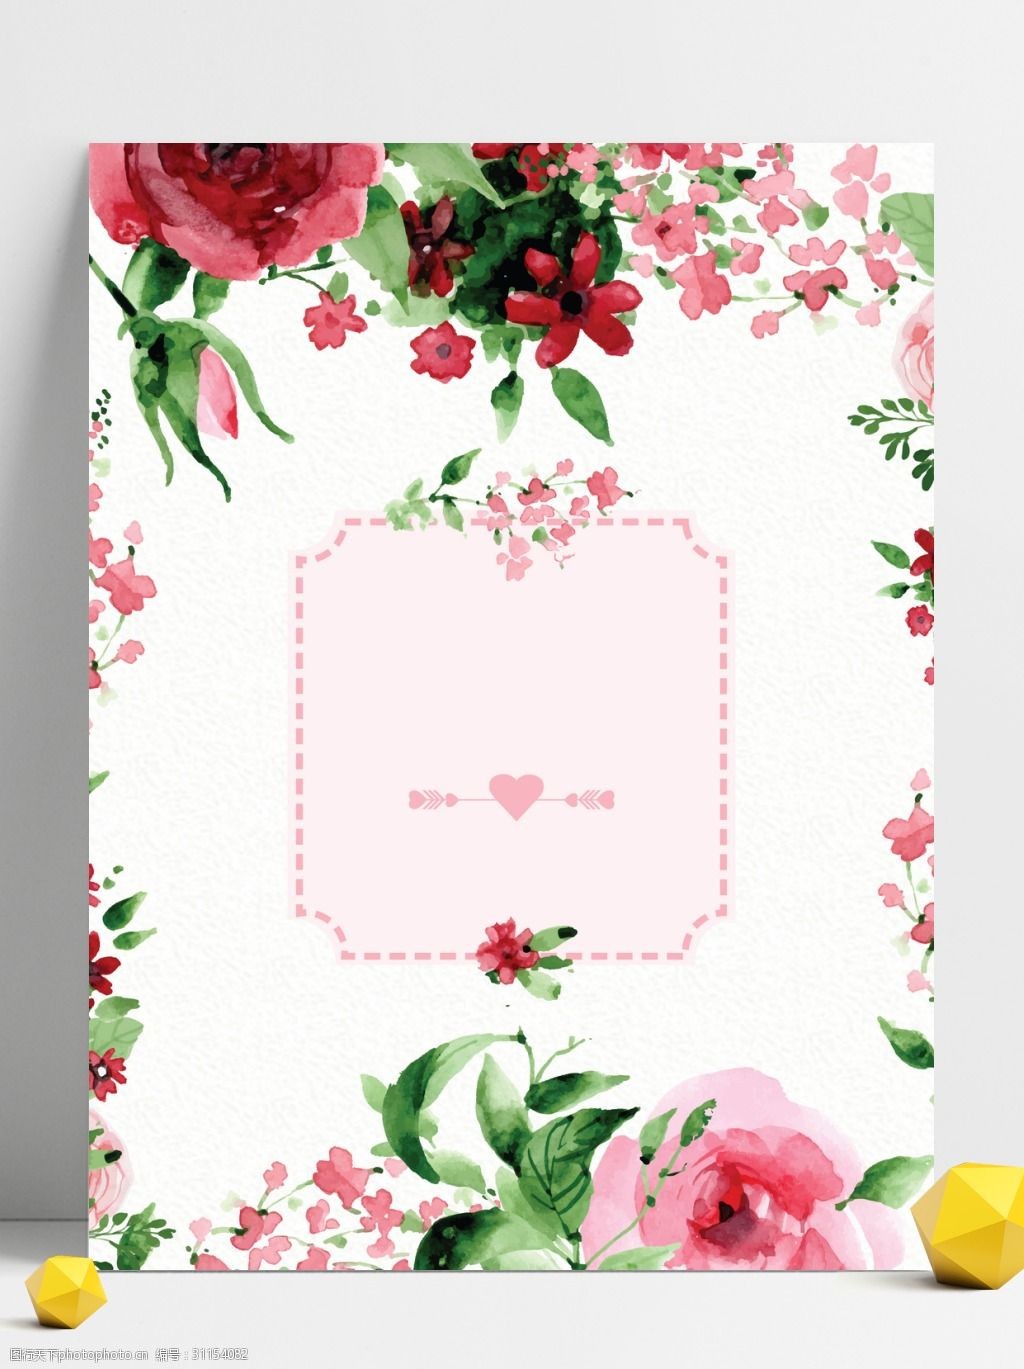 关键词:粉色玫瑰花广告背景 广告背景 清新 玫瑰花 植物 花朵 手绘